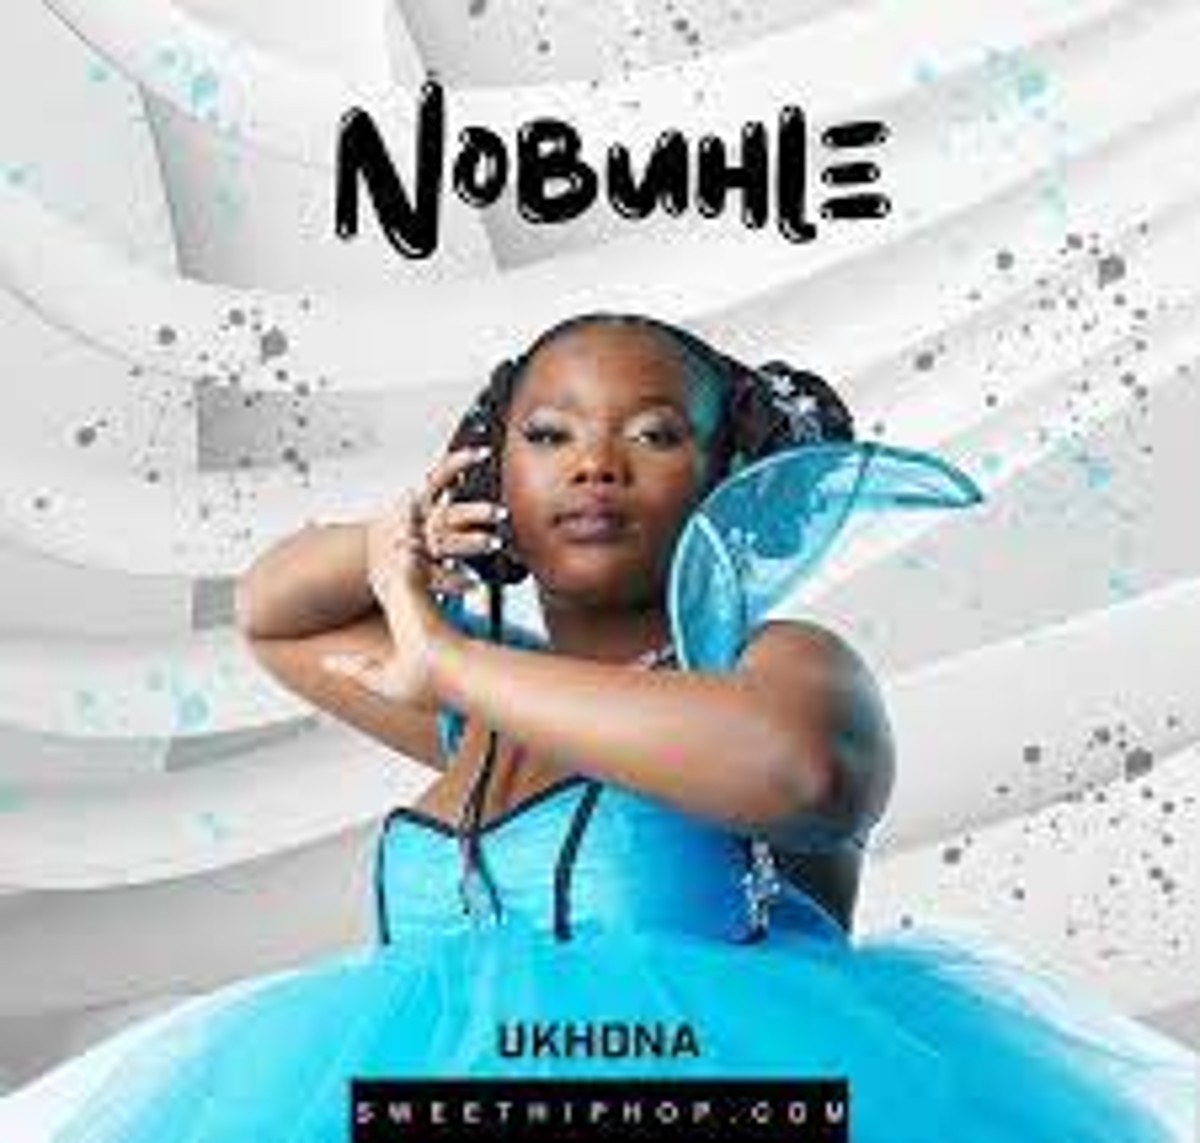 Nobuhle – Ukhona Mp3 Download Fakaza: